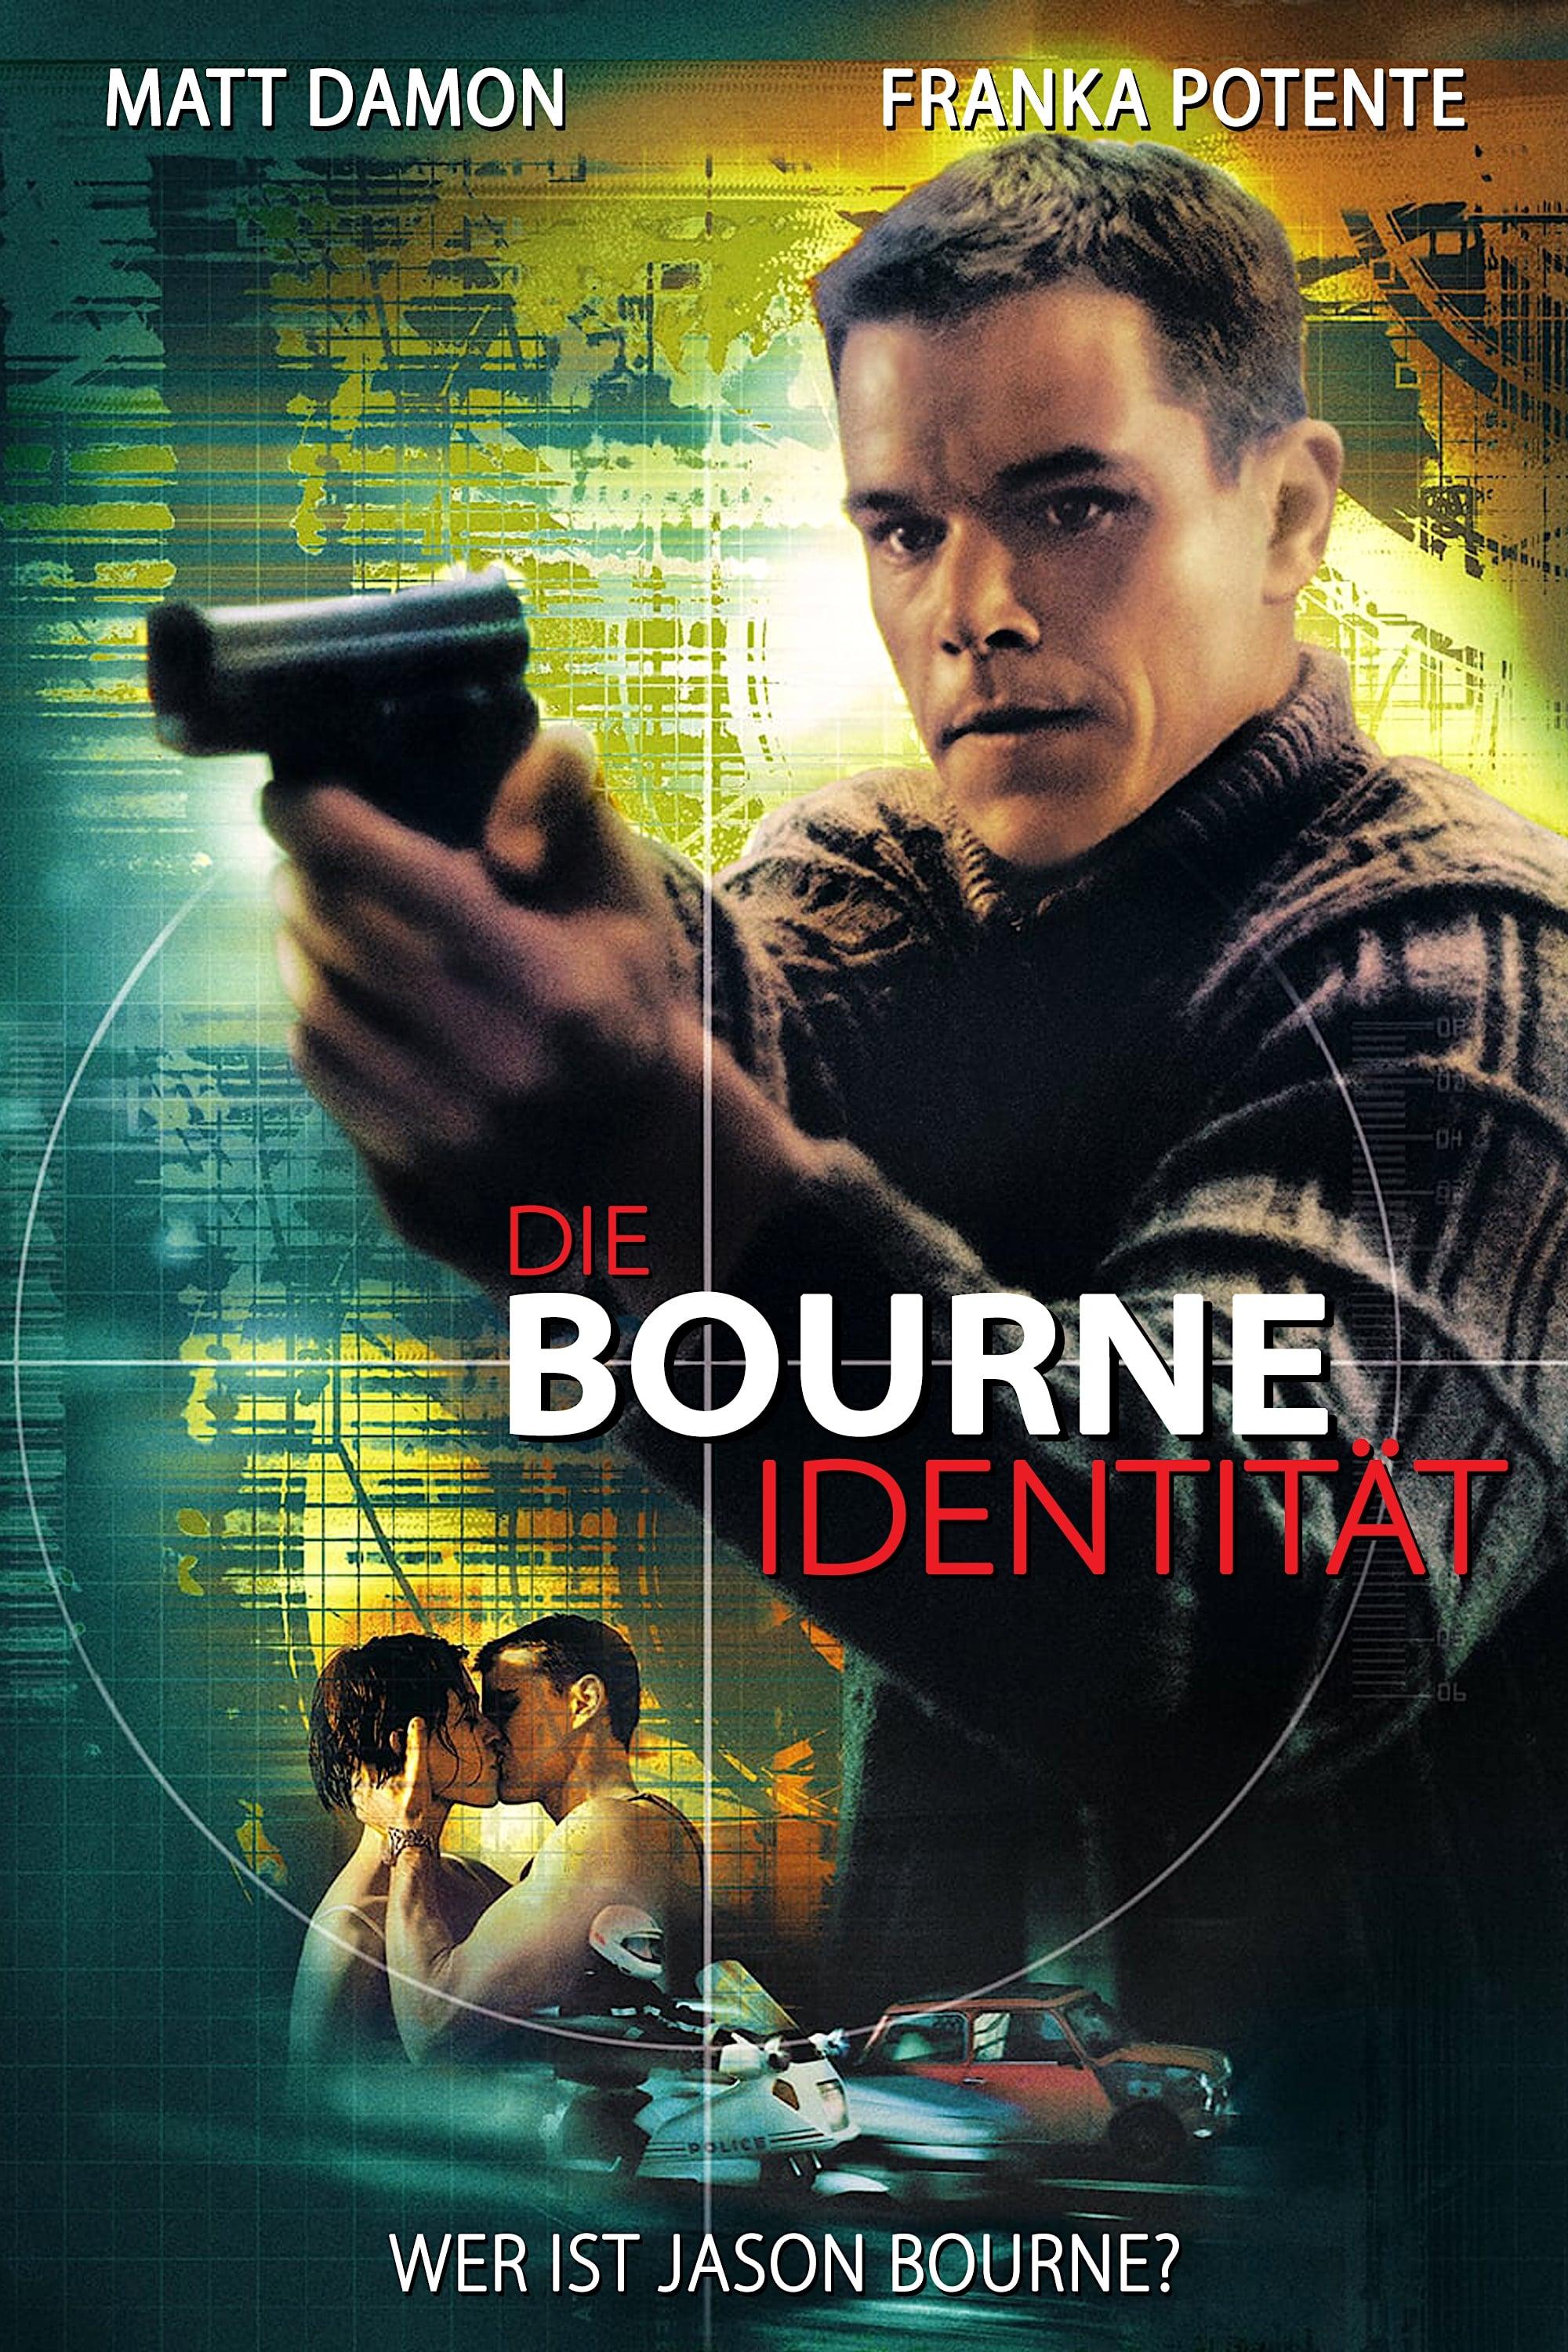 Die Bourne Identität poster